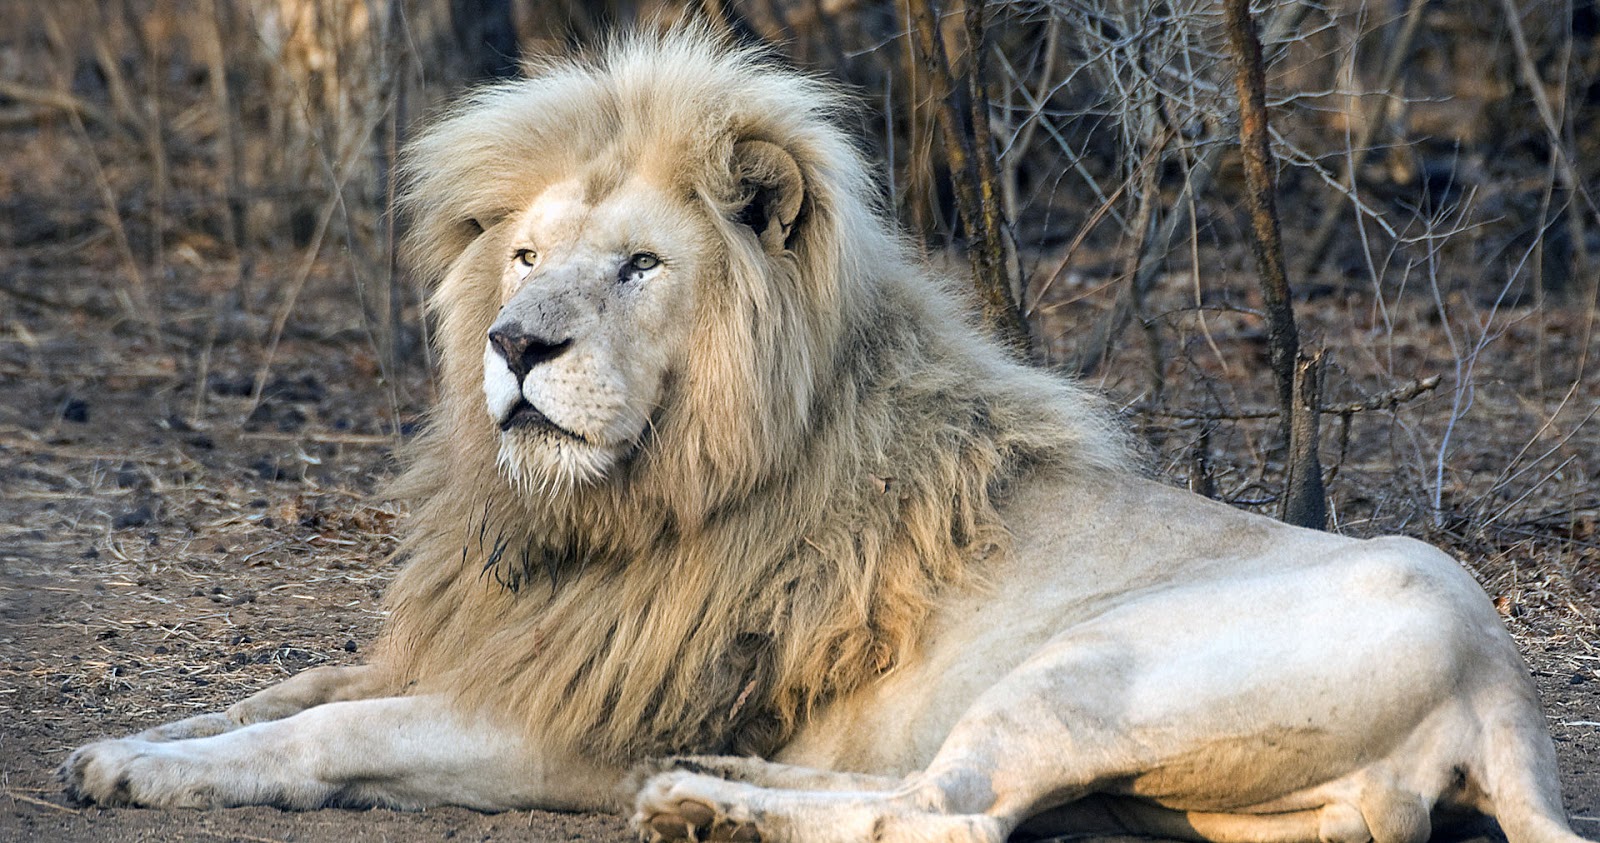 león completo fondo de pantalla hd,león,fauna silvestre,felidae,masai lion,animal terrestre